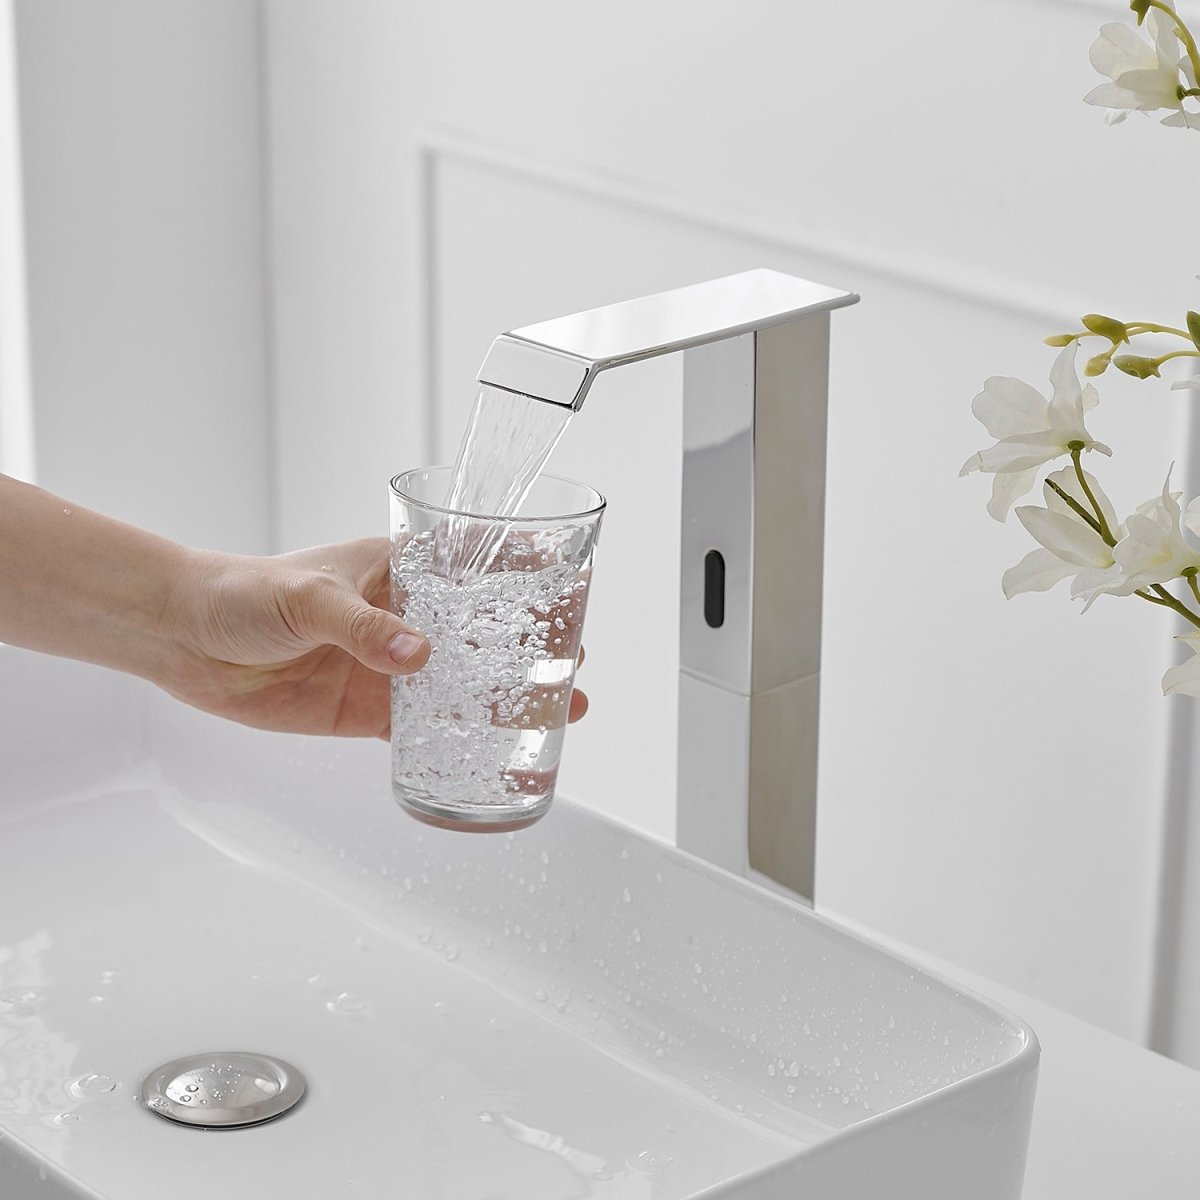 DC Automatic Sensor Touchless Bathroom Faucet Chrome - buyfaucet.com